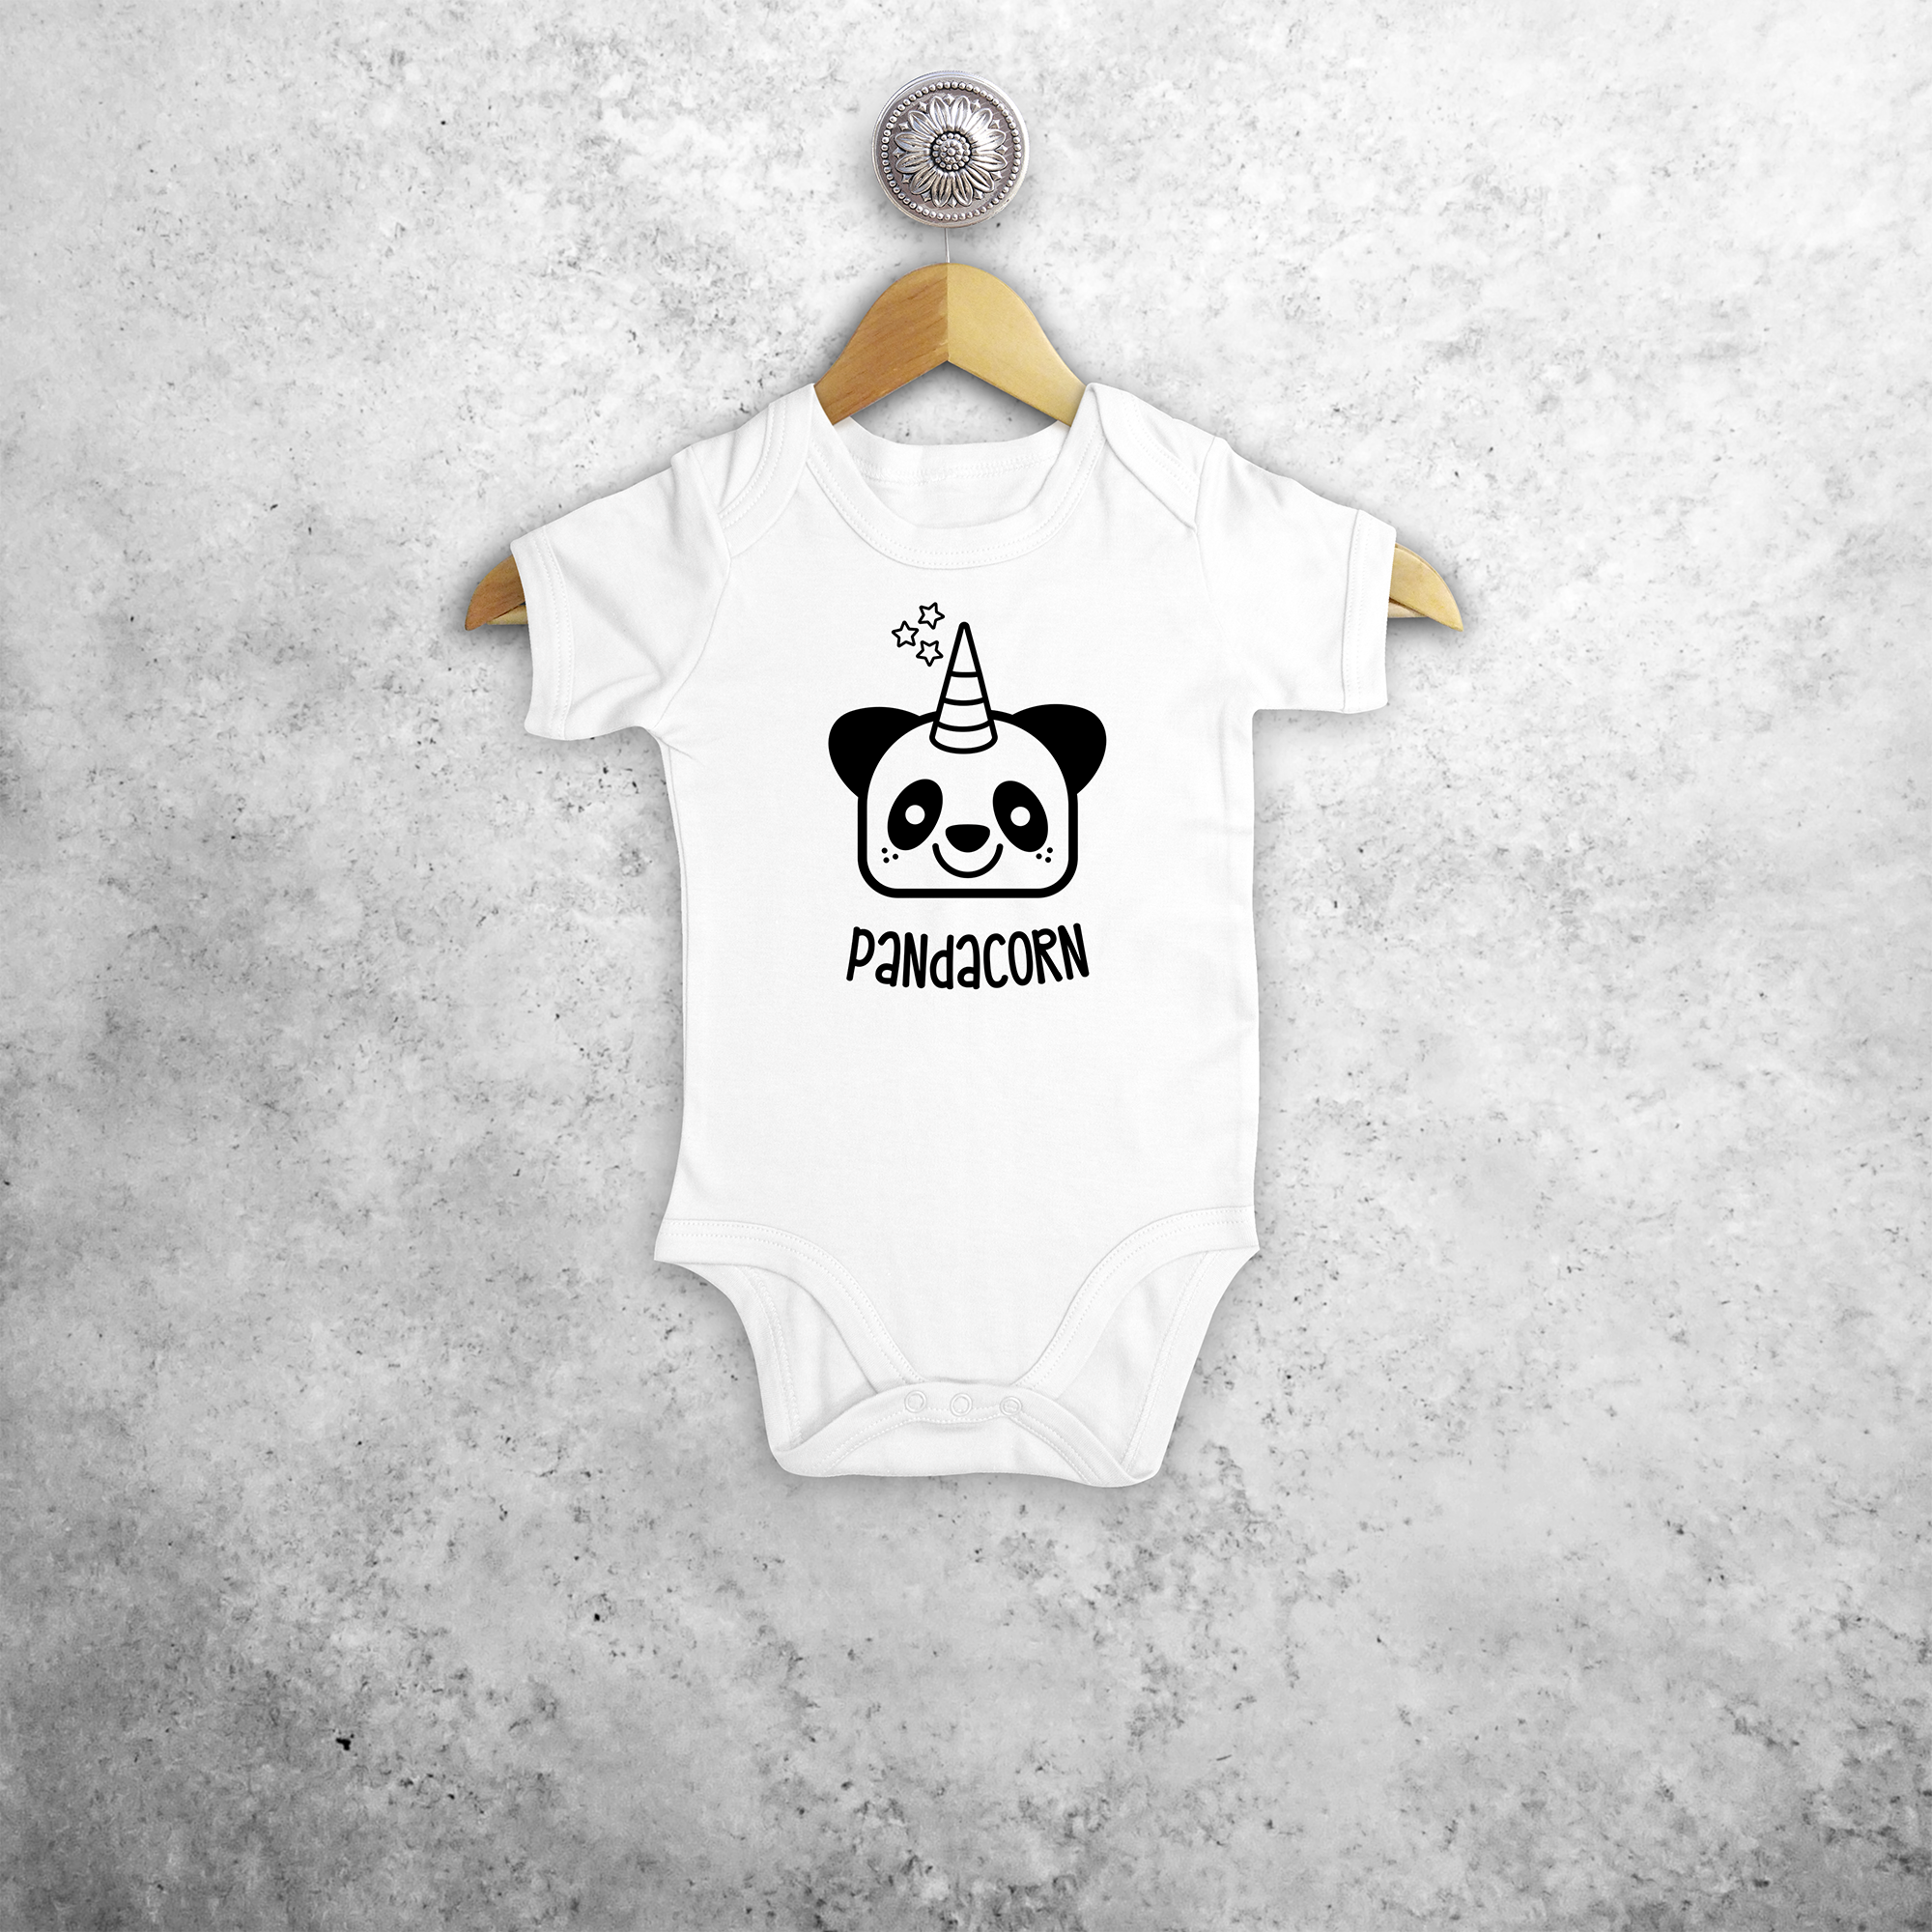 Pandacorn baby shortsleeve bodysuit